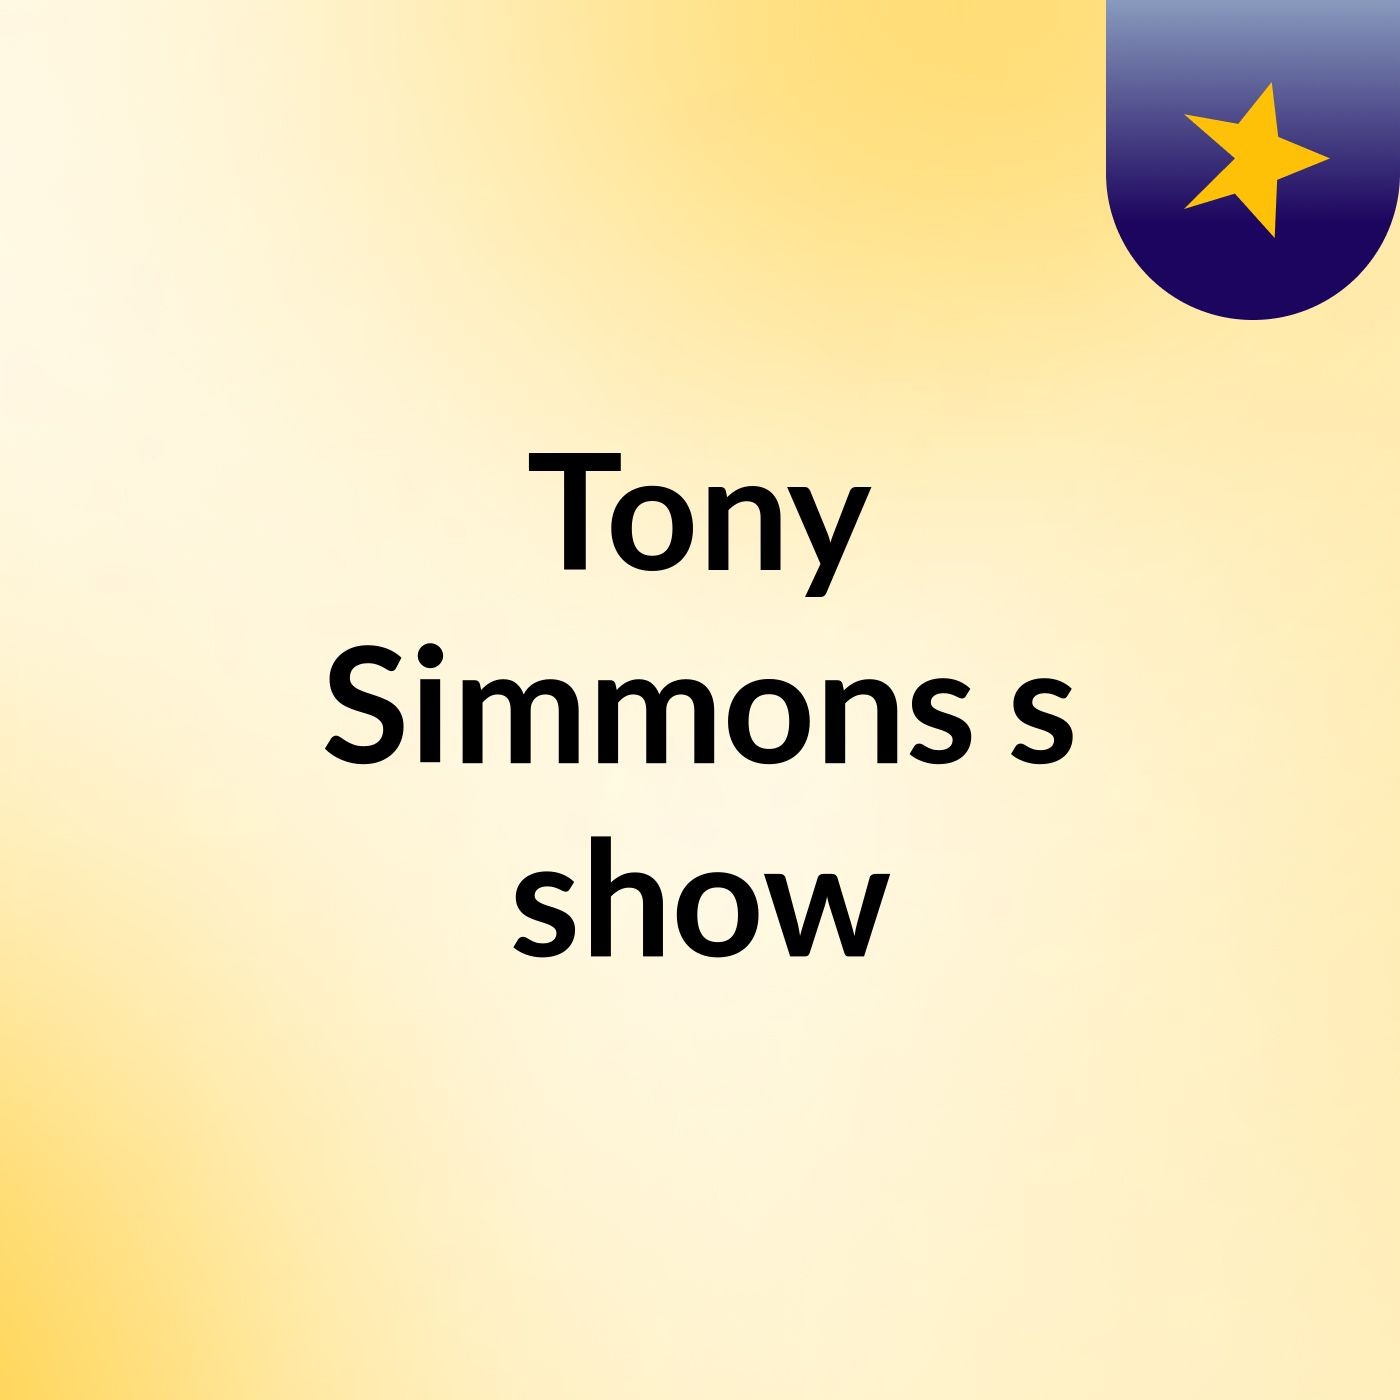 Tony Simmons's show